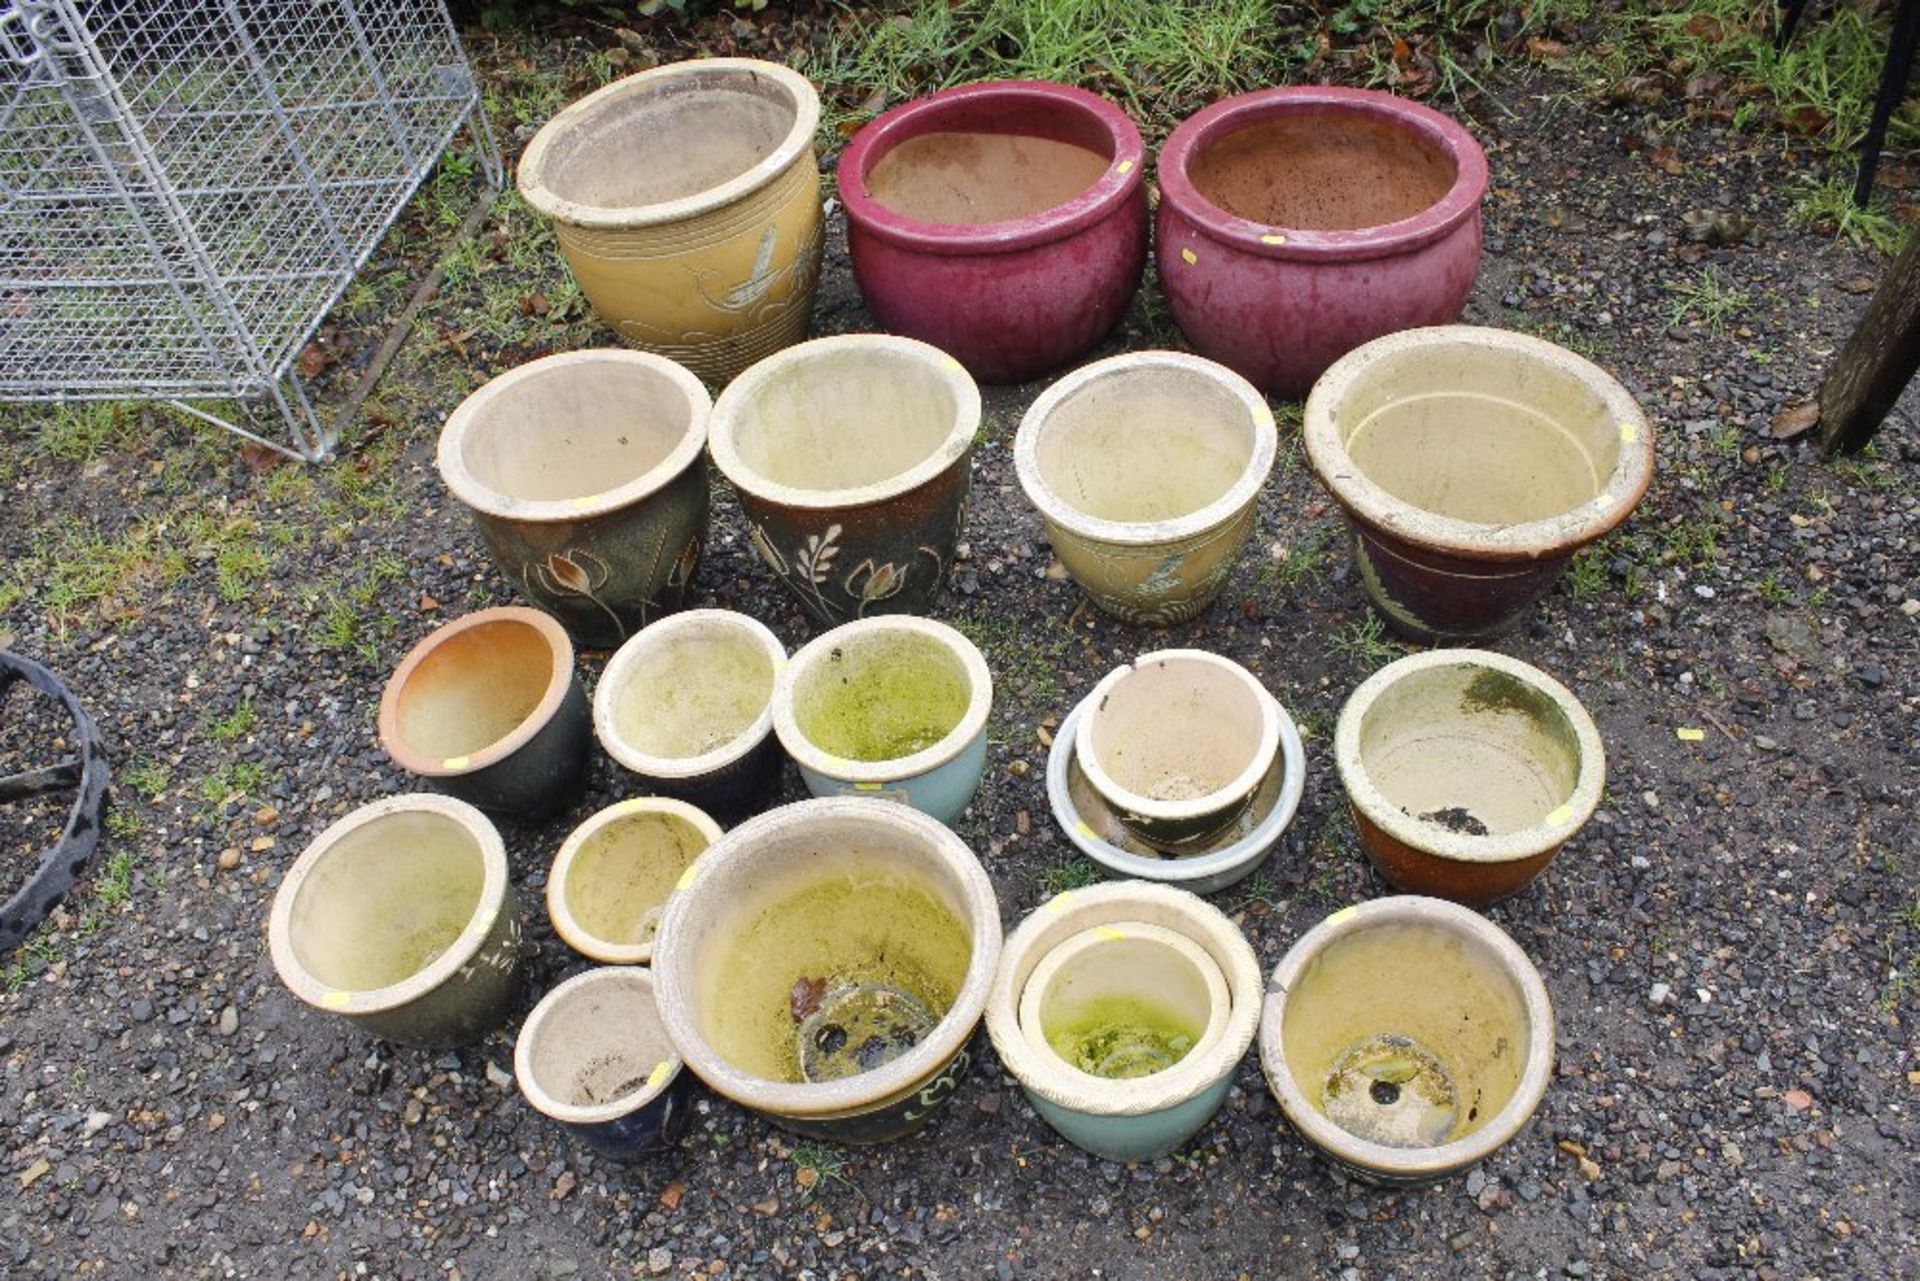 A collection of garden flowerpots